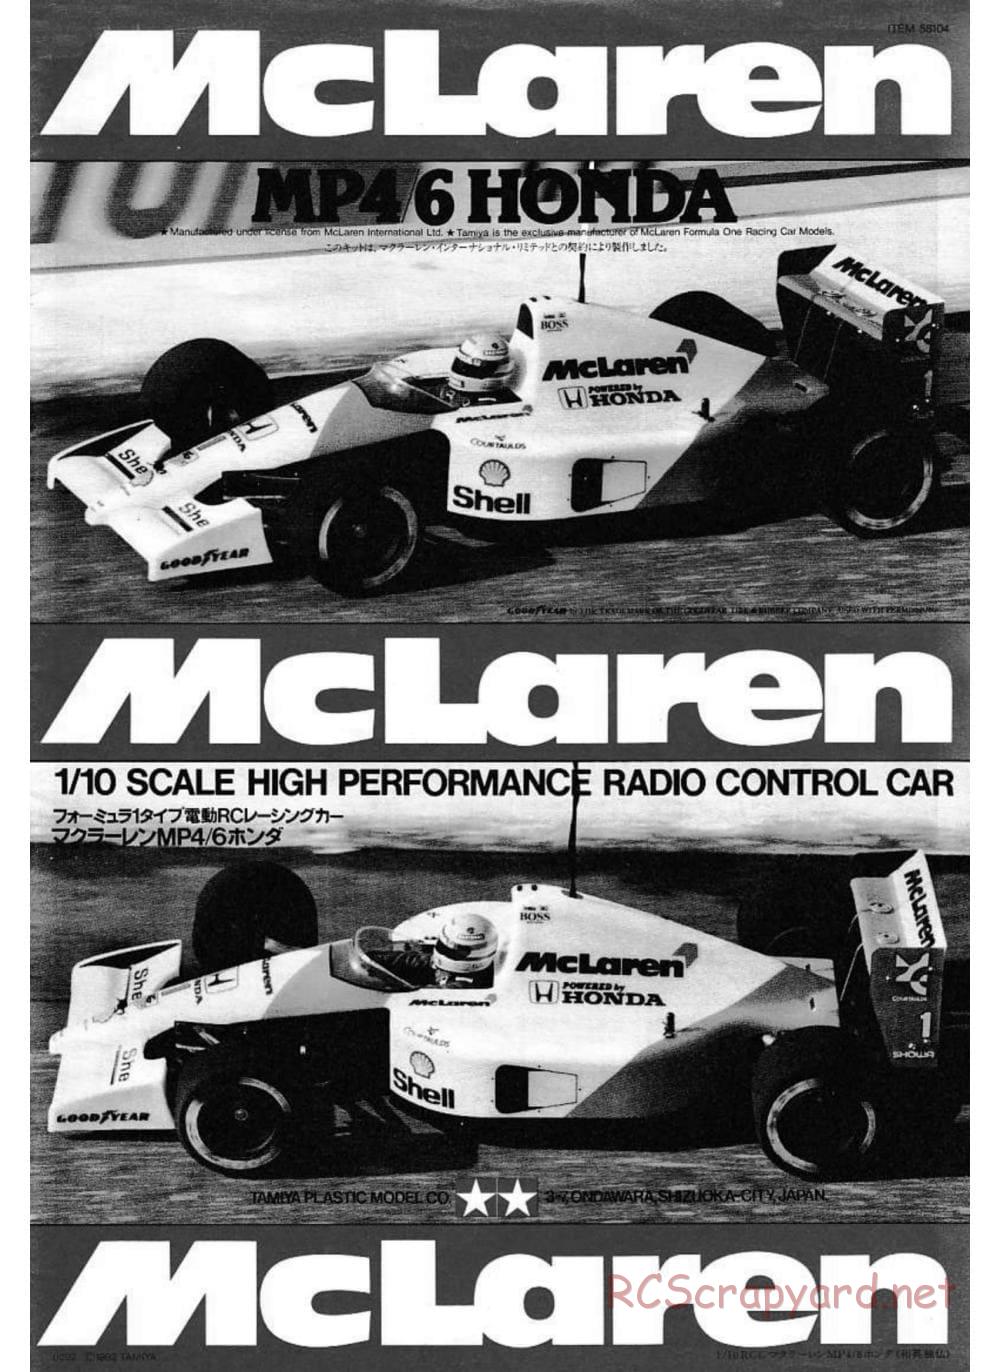 Tamiya - McLaren MP4/6 Honda - F102 Chassis - Manual - Page 1